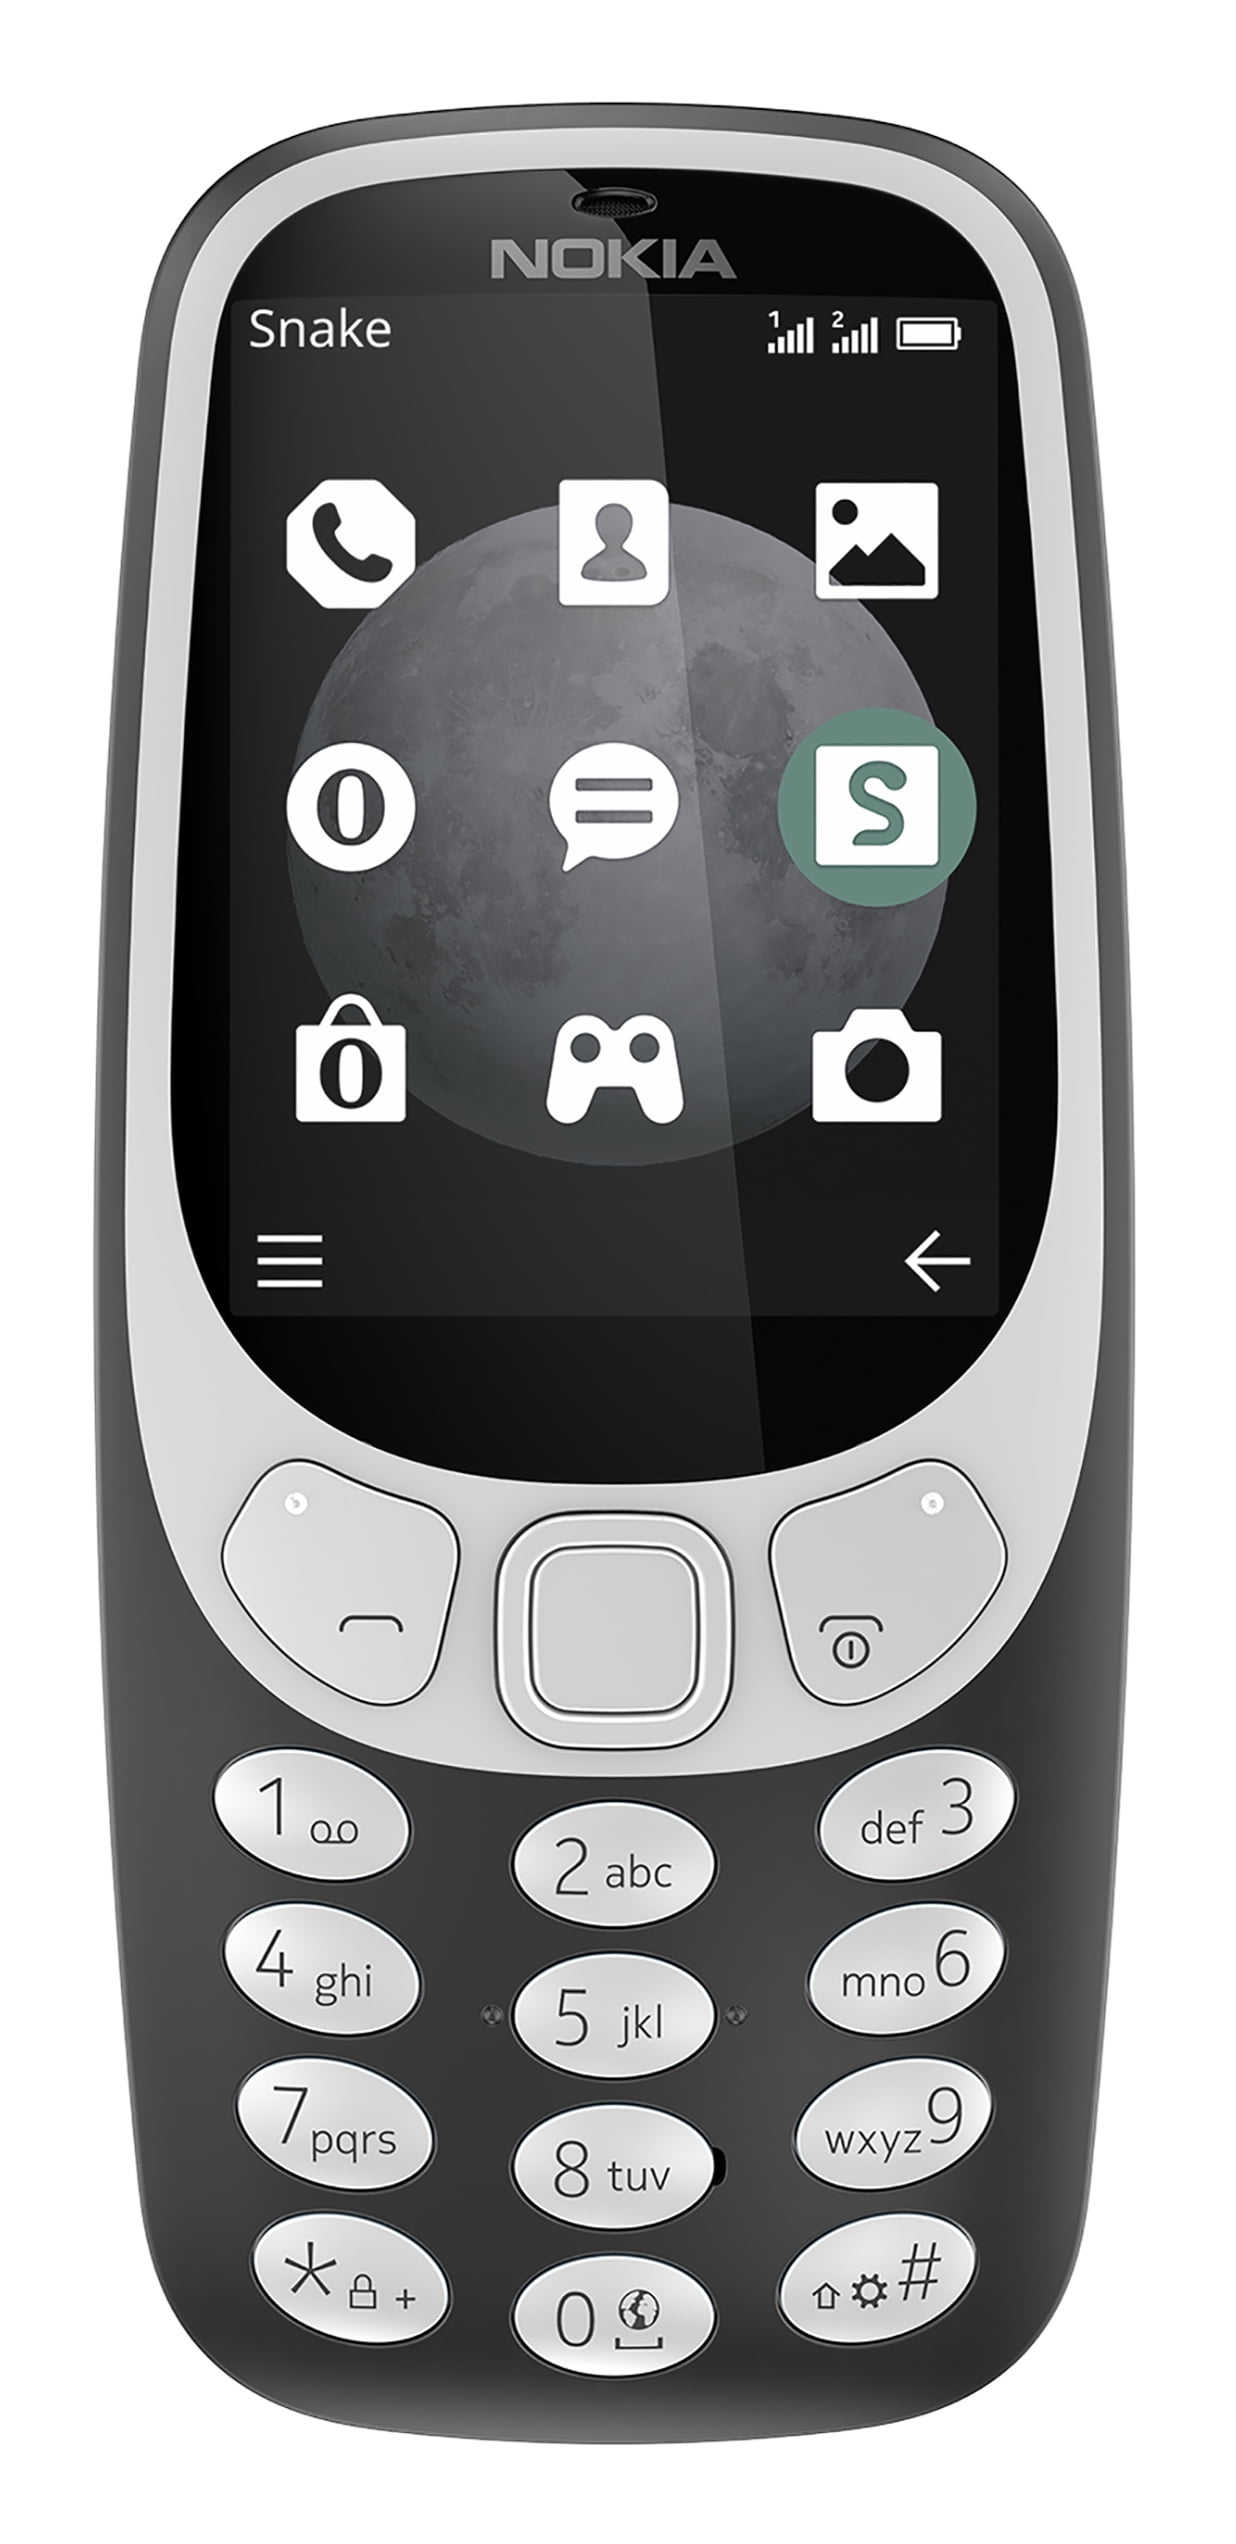 Nokia 3310 là tượng đài của dòng điện thoại cổ điển. Với thiết kế vững chắc, độ bền cao và tính năng đáng tin cậy, hơn 100 triệu người từng sử dụng chiếc điện thoại này. Hãy xem hình ảnh và cảm nhận những khoảnh khắc tuyệt vời của nó.